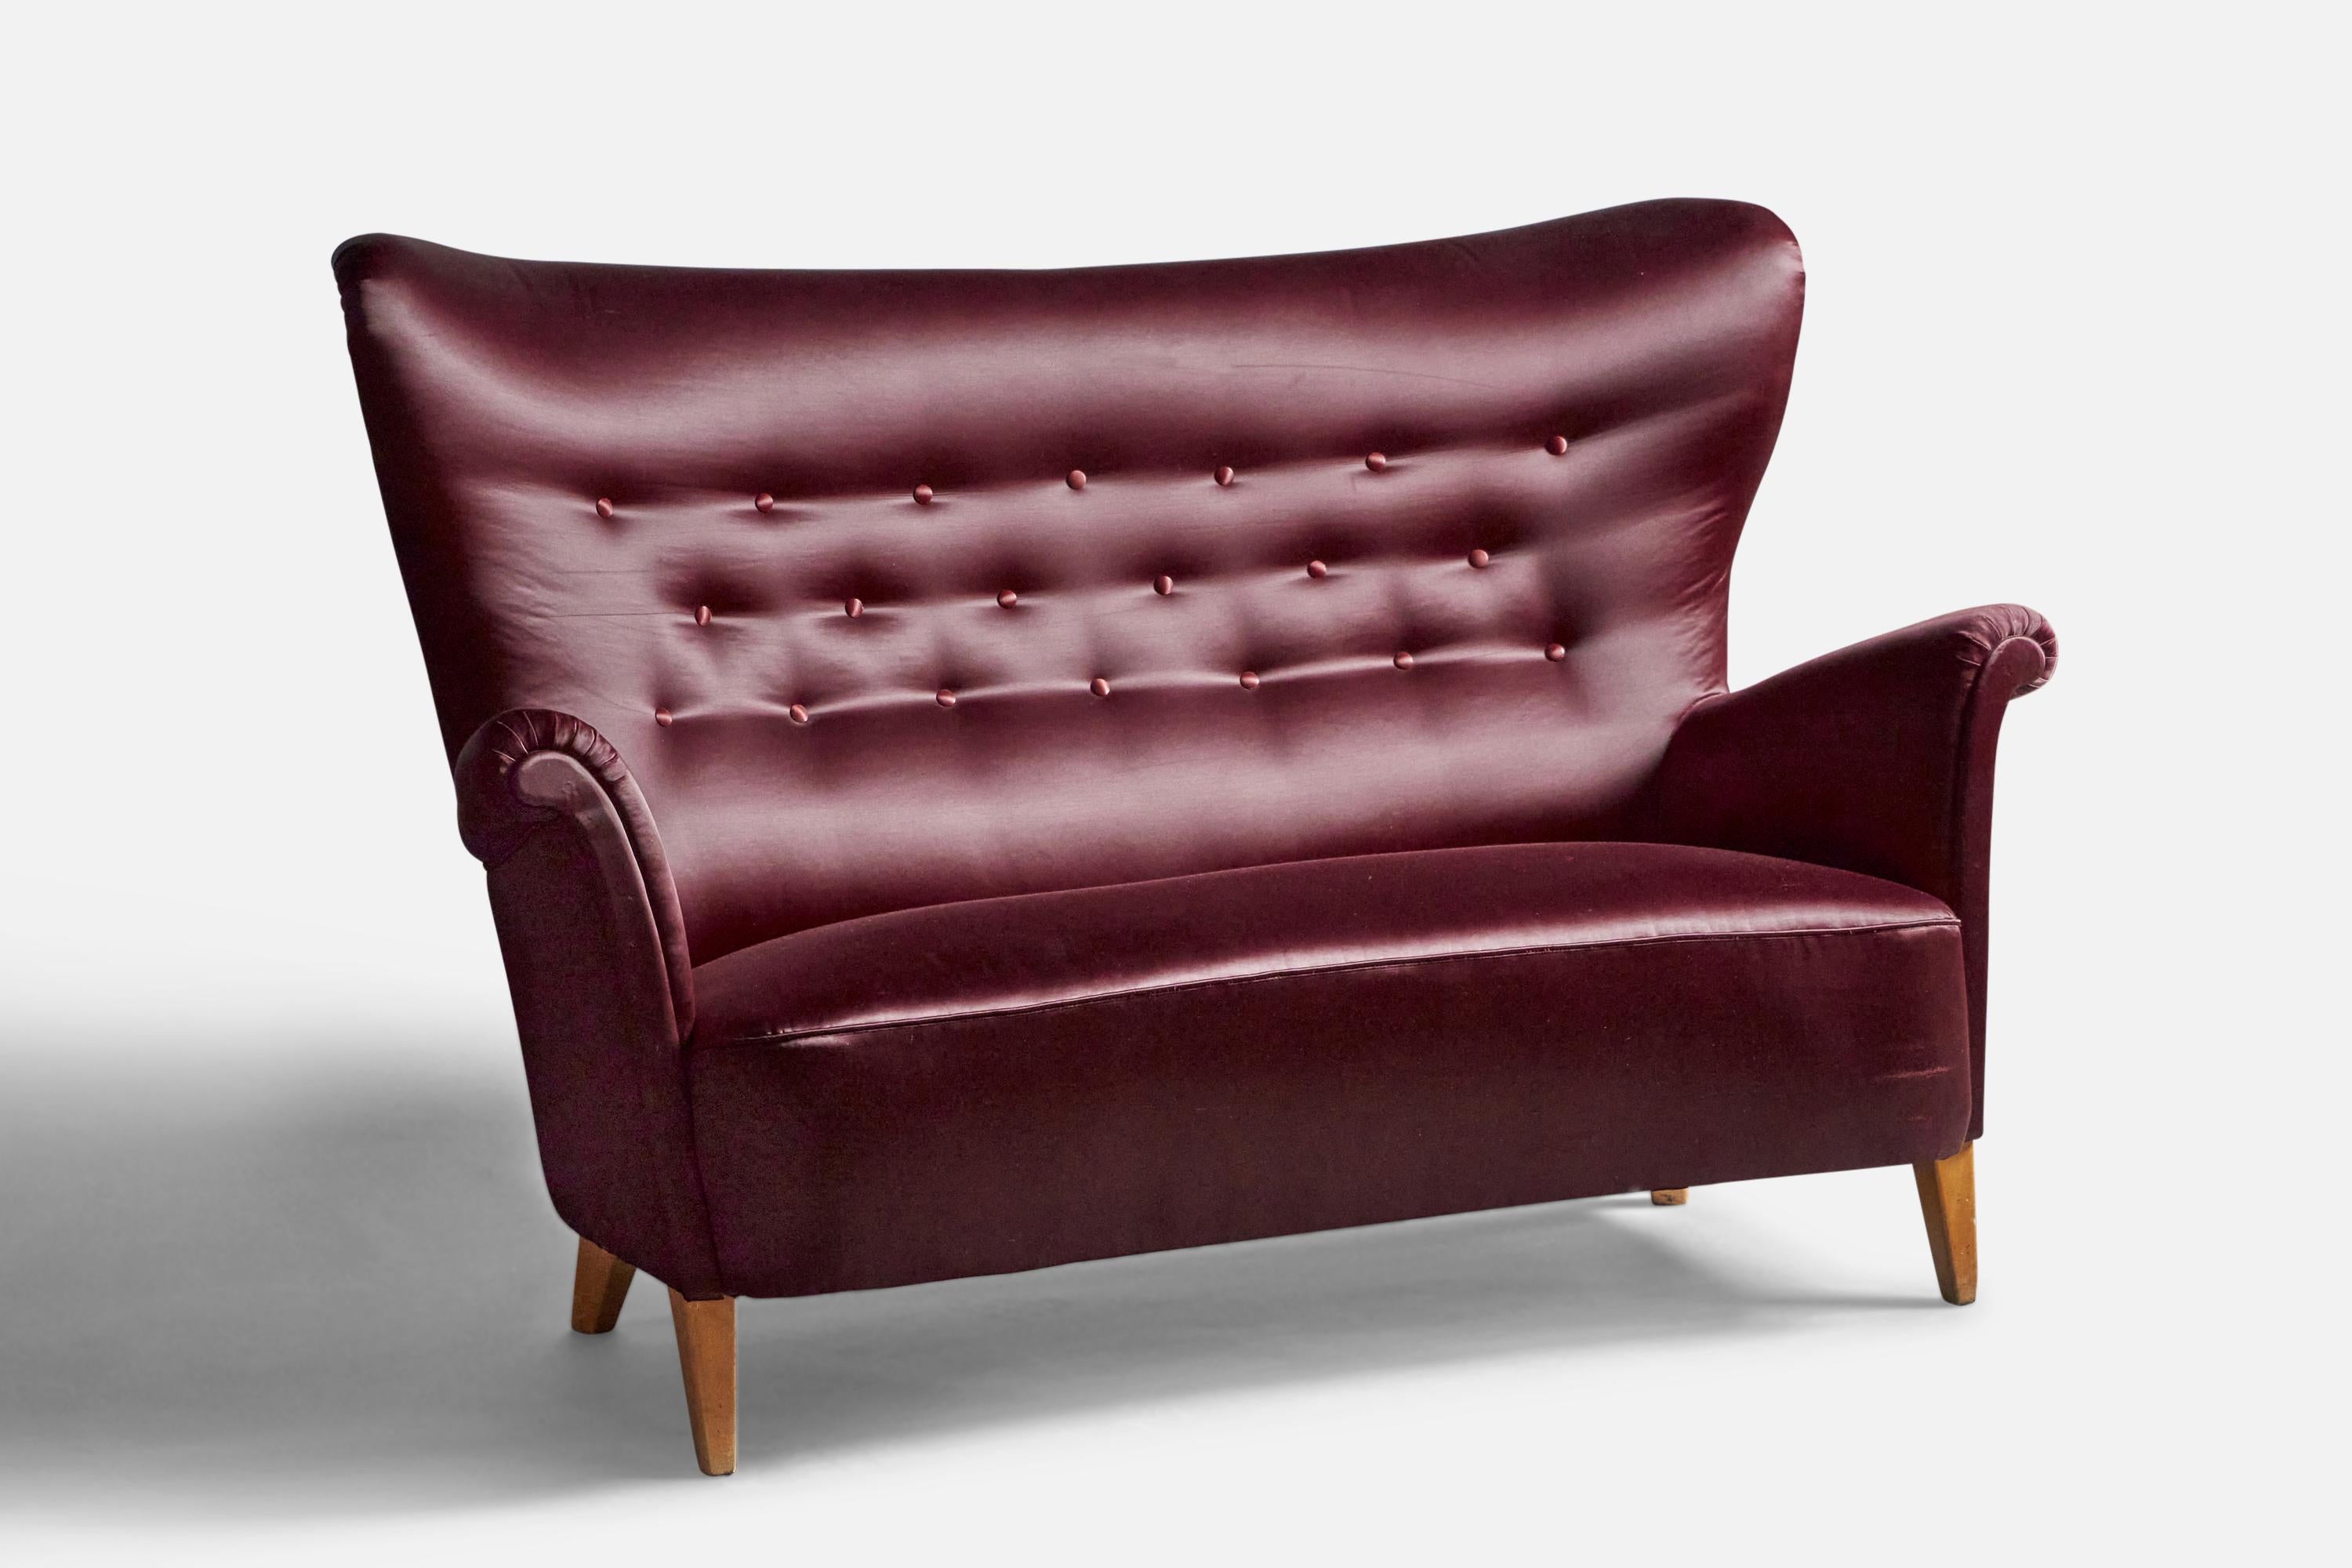 Canapé en velours violet et en bouleau, conçu et produit par Carl Malmsten, Suède, c. 1940s.